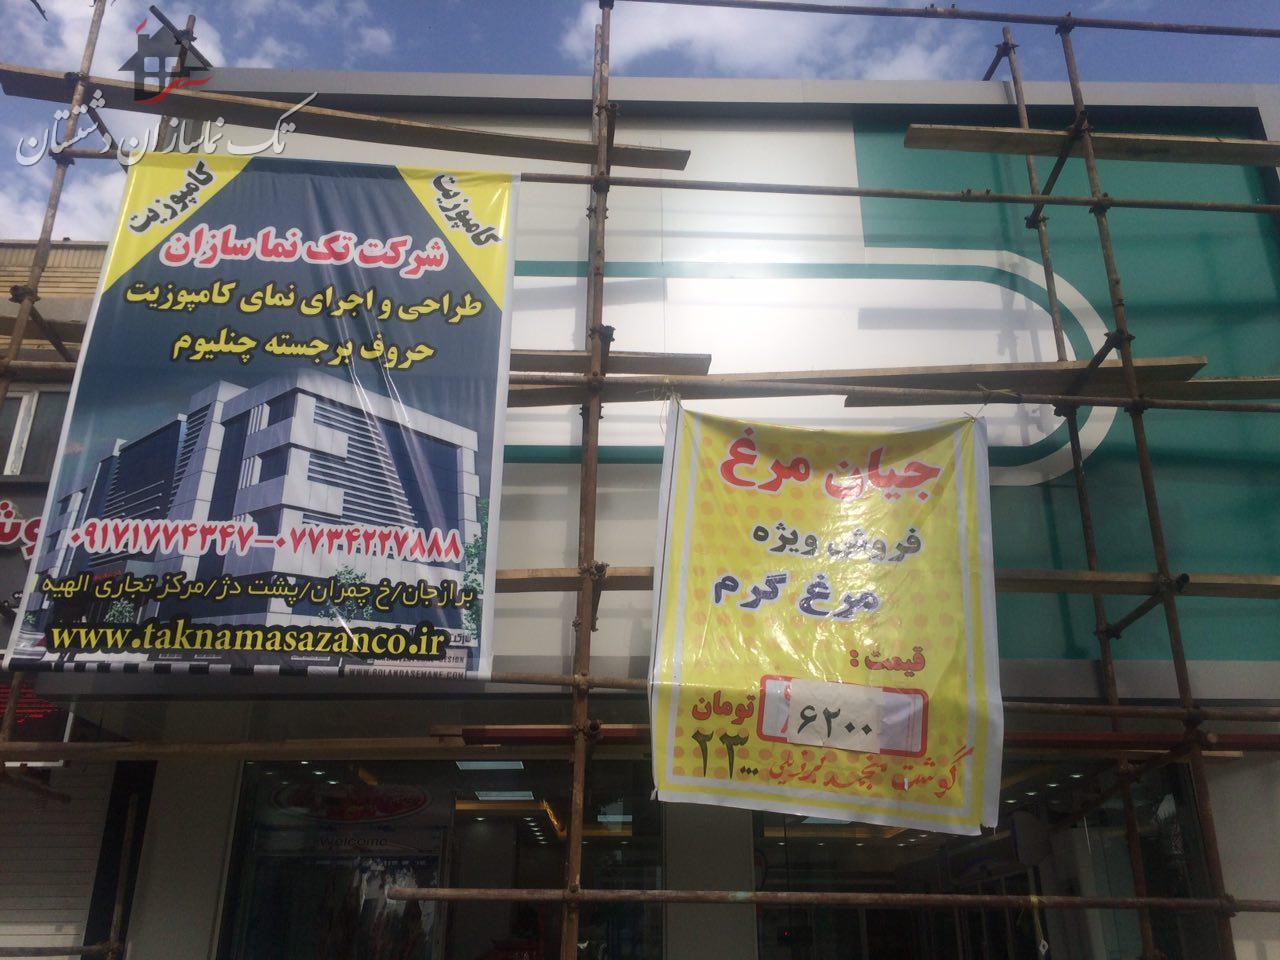  طراحی و اجرای نمای کامپوزیت نمایندگی جیان برغ در شهر بوشهر